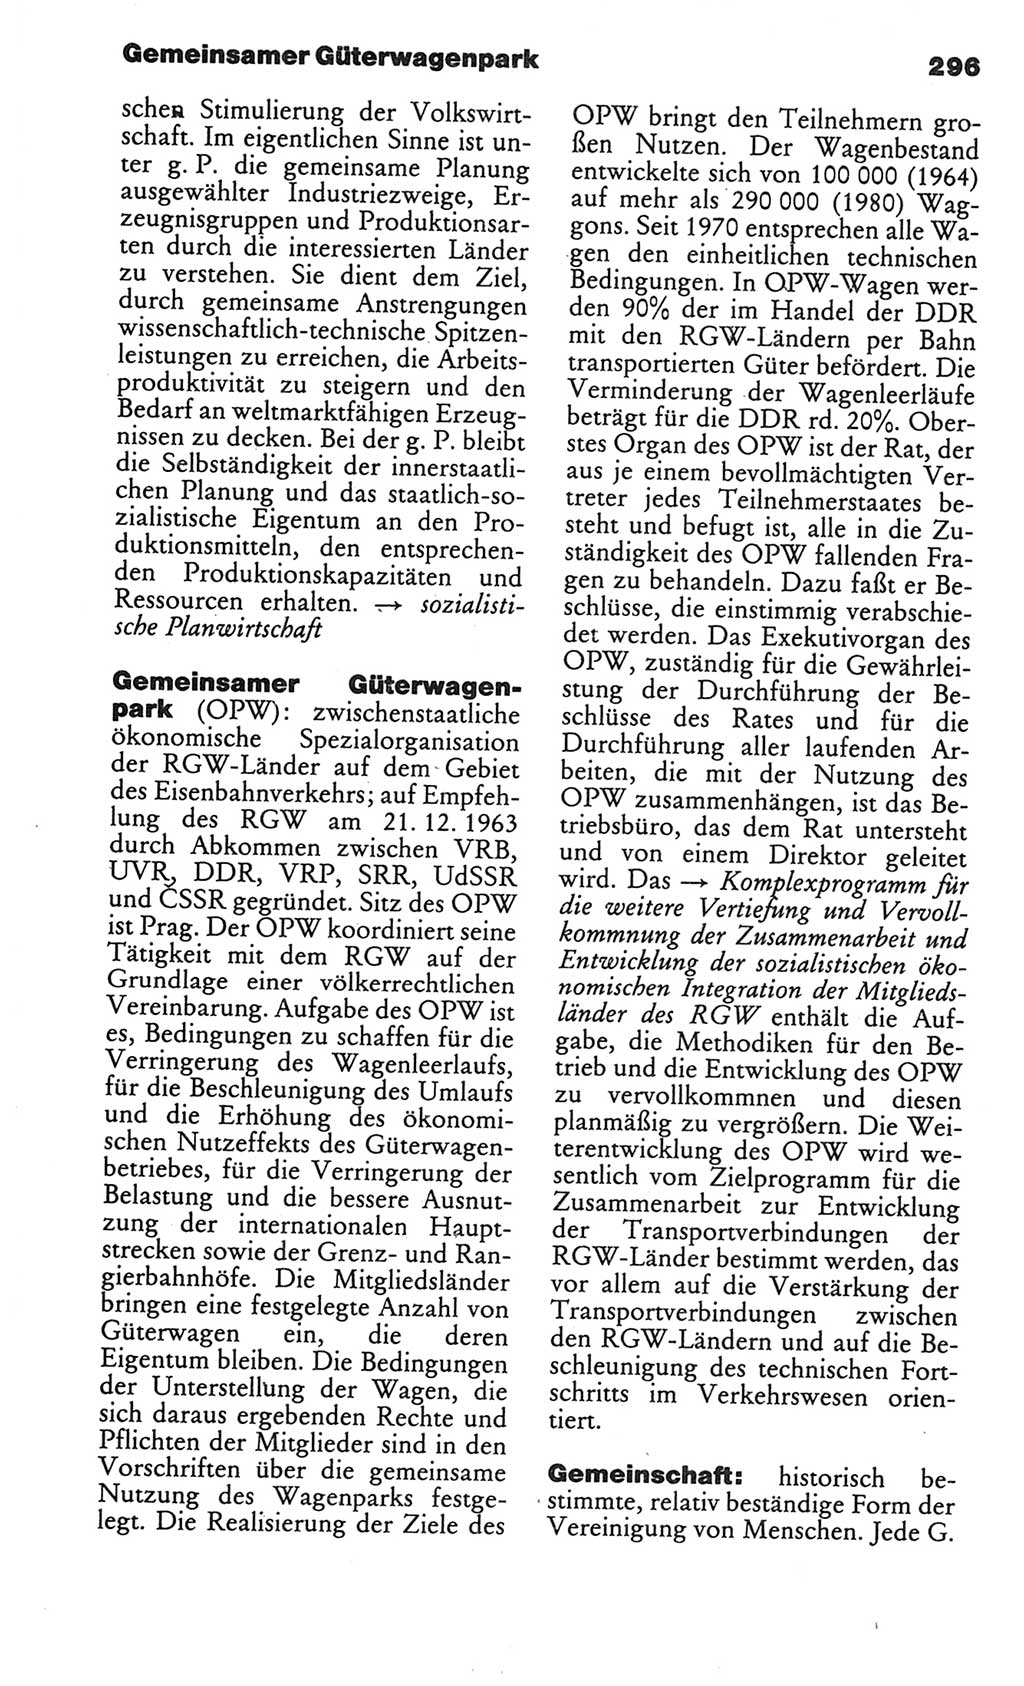 Kleines politisches Wörterbuch [Deutsche Demokratische Republik (DDR)] 1986, Seite 296 (Kl. pol. Wb. DDR 1986, S. 296)